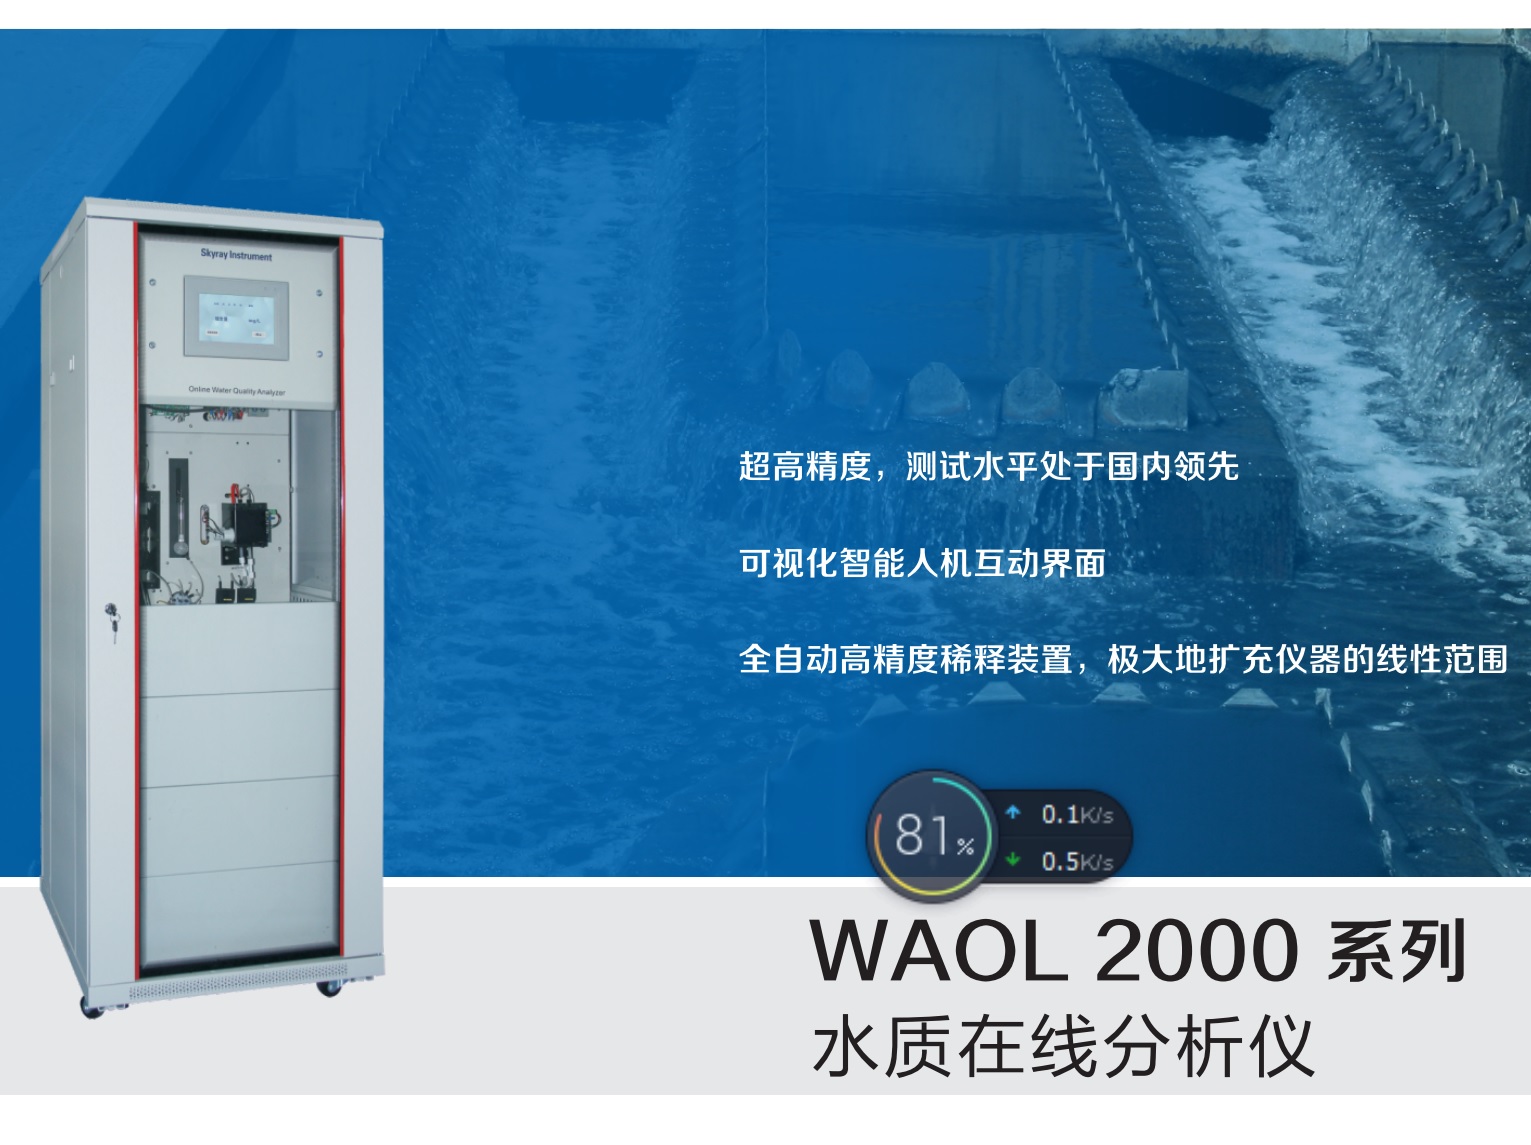 江苏天瑞仪器股份有限公司-WAOL 2000 水质在线分析